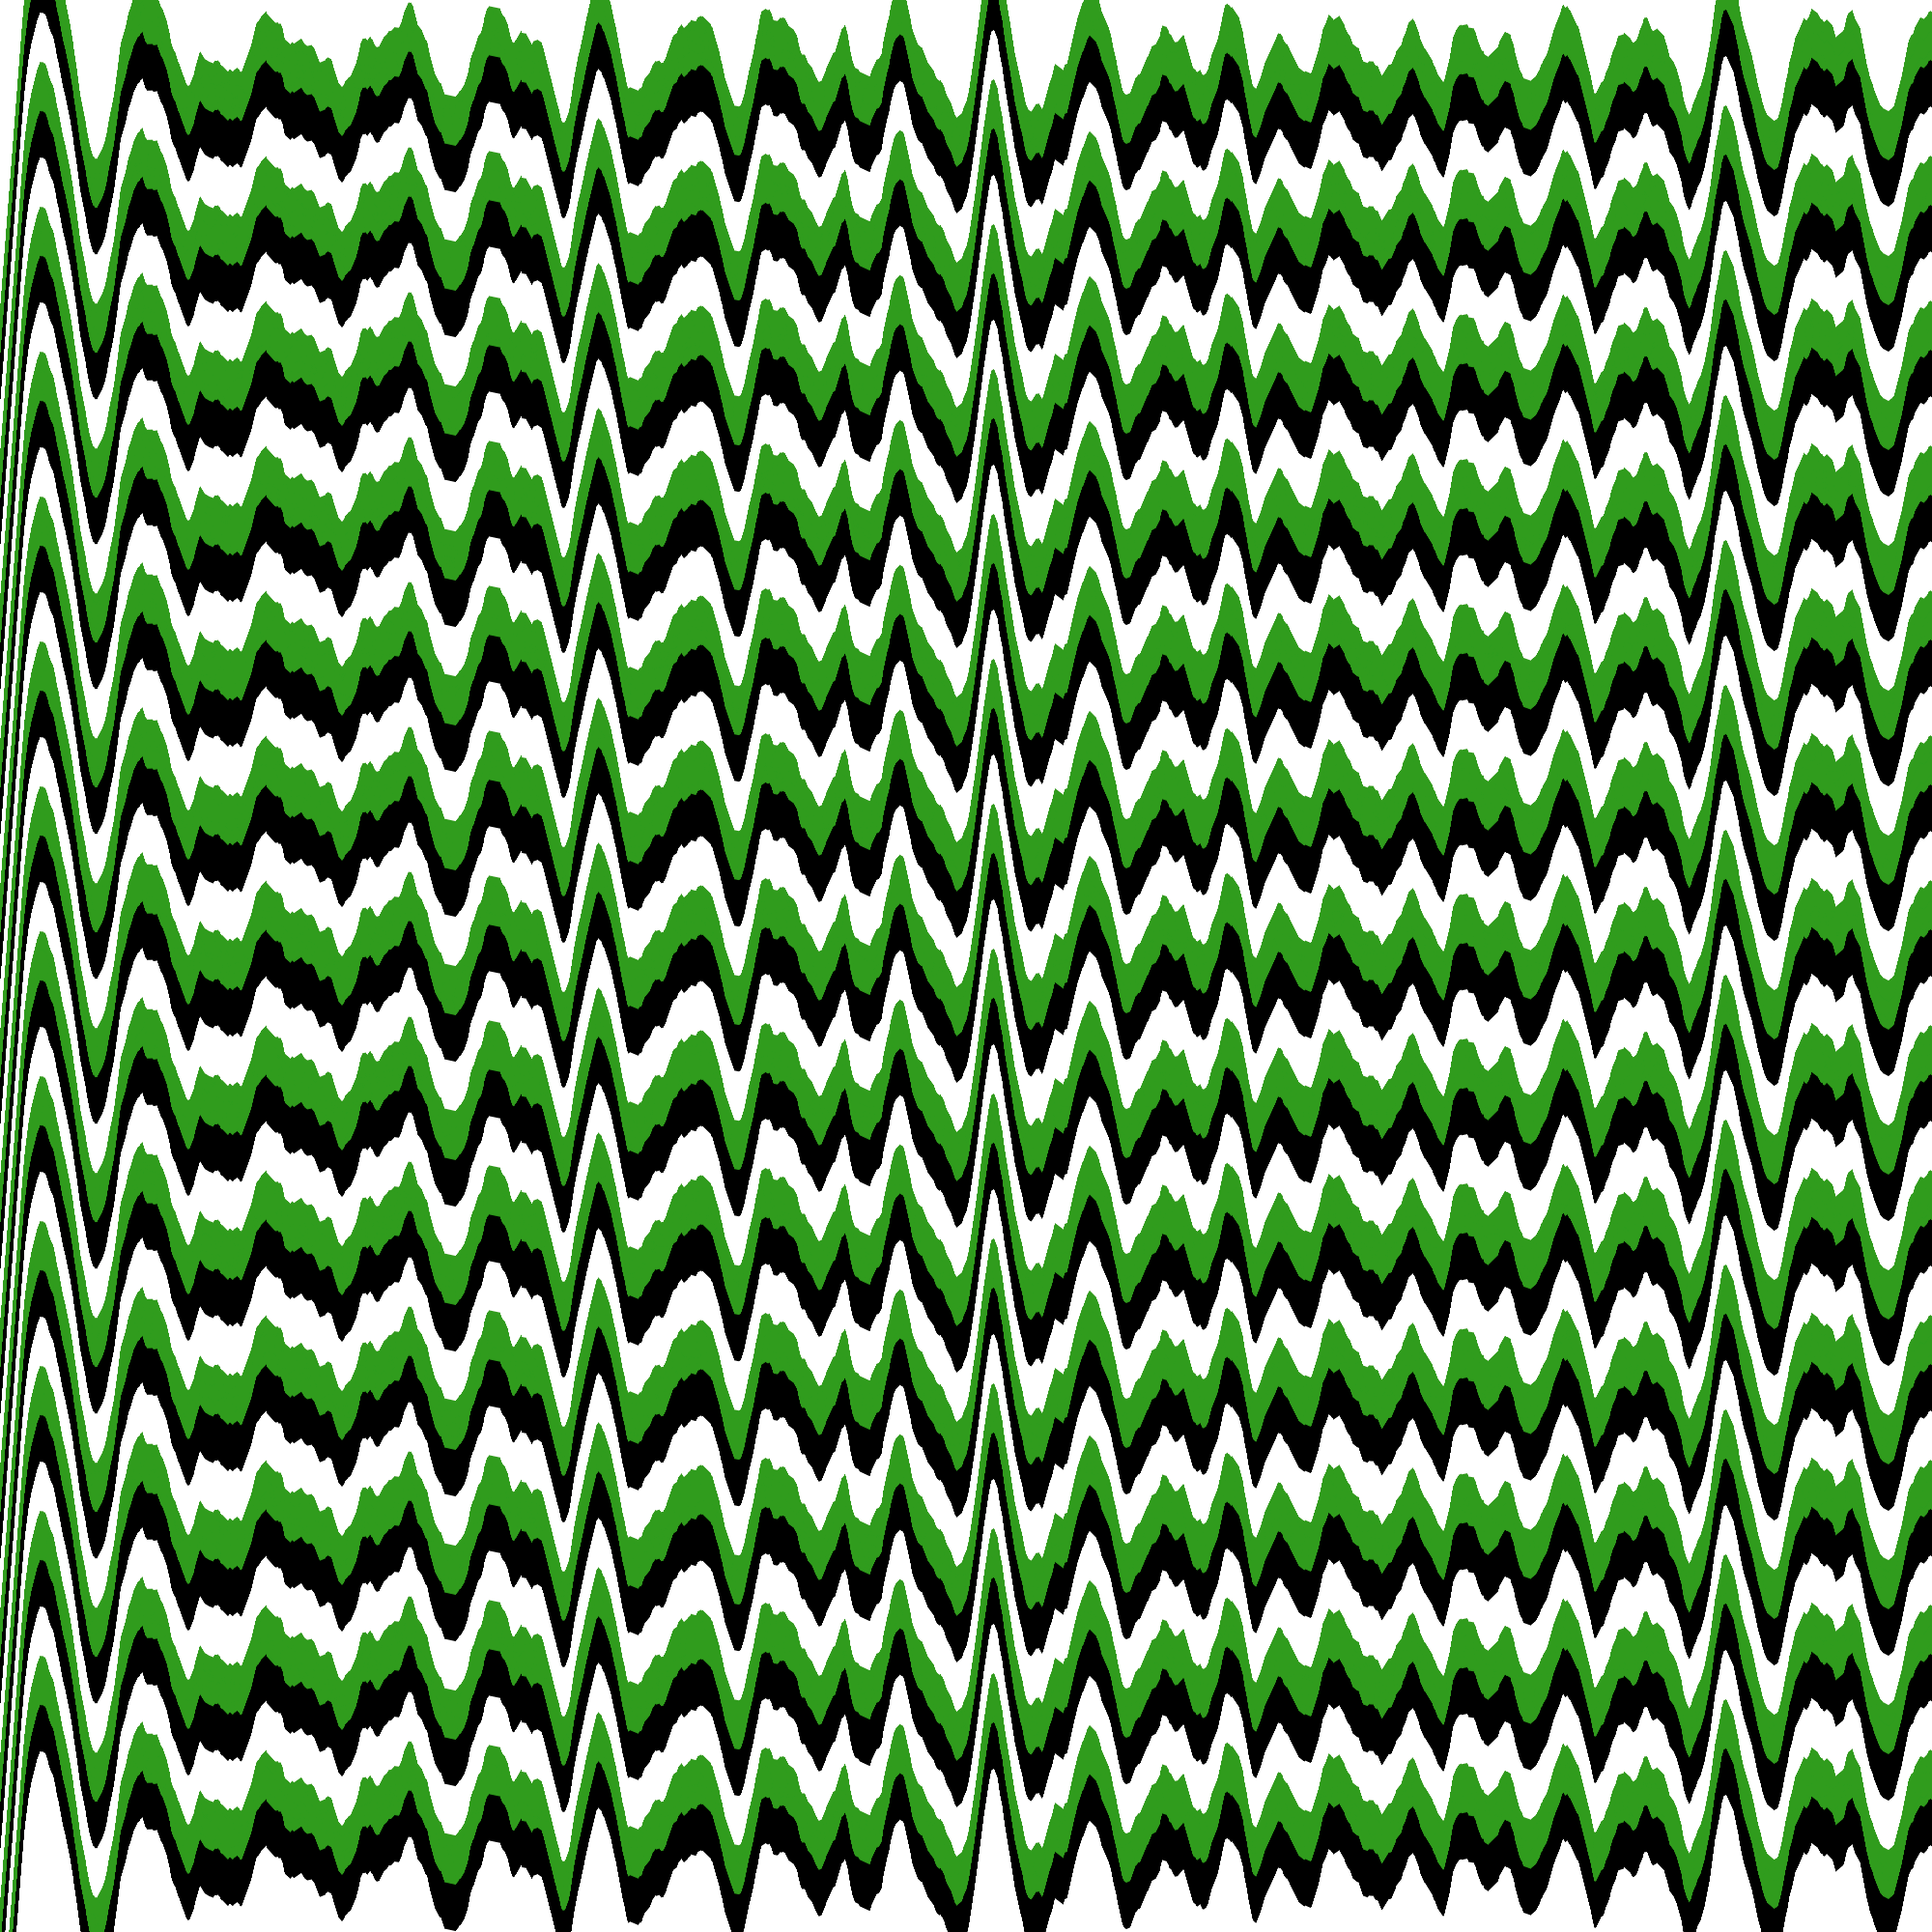 Faixas onduladas brancas, verdes e pretas com tamanhos aleatórios em relação à frequência e amplitude.